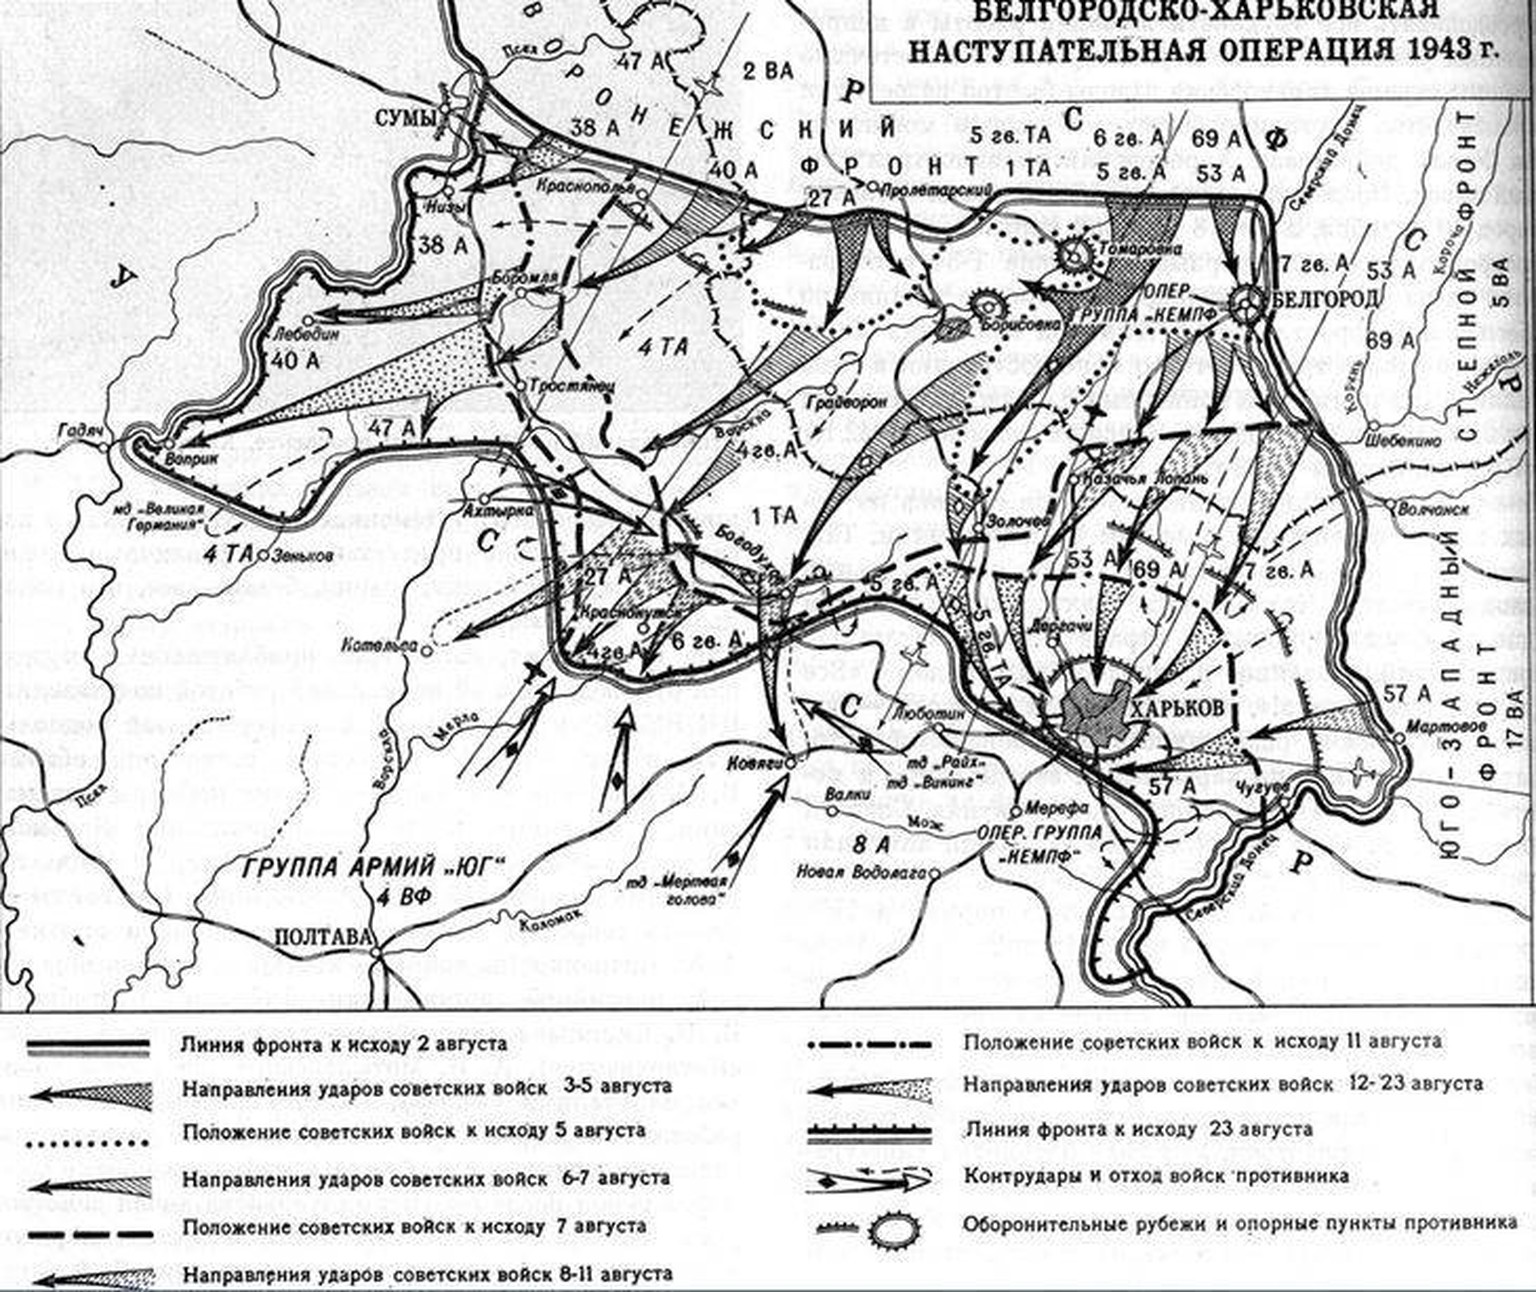 Truppenbewegungen bei der Belgorod-Charkower Operation, August 1943.
https://en.topwar.ru/163272-harkovskoe-srazhenie-avgust-1943-goda-osvobozhdenie-harkova.html